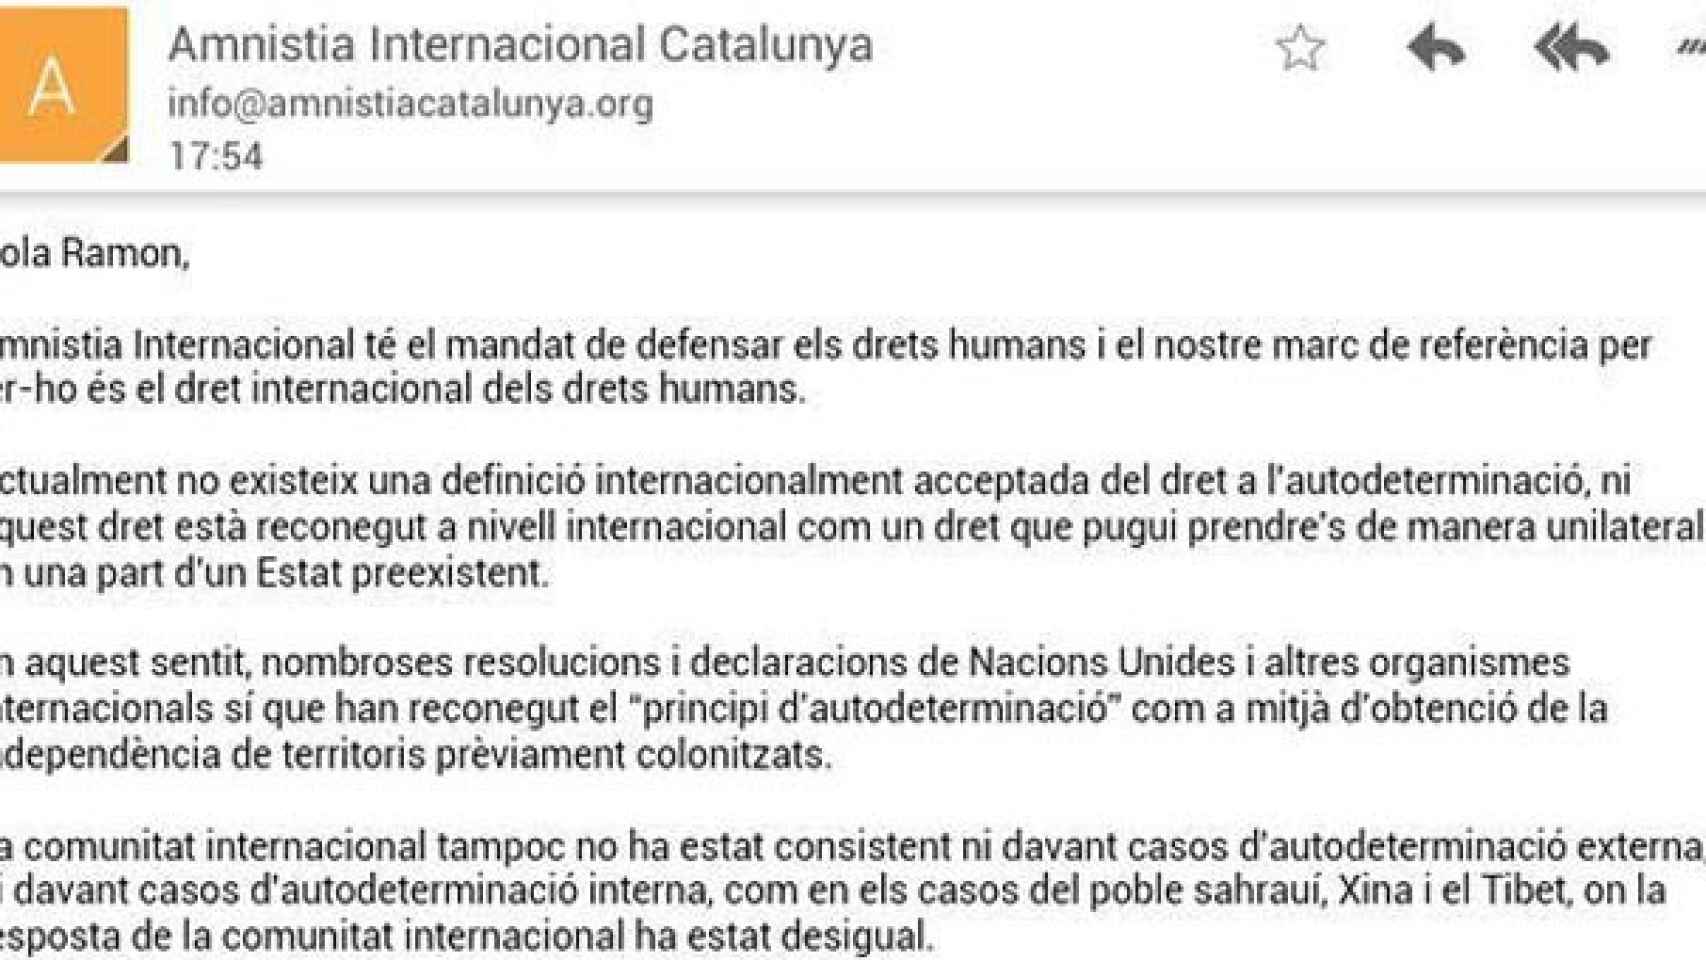 Amnistía Internacional Cataluña rechaza apoyar el referéndum secesionista que promueve Artur Mas